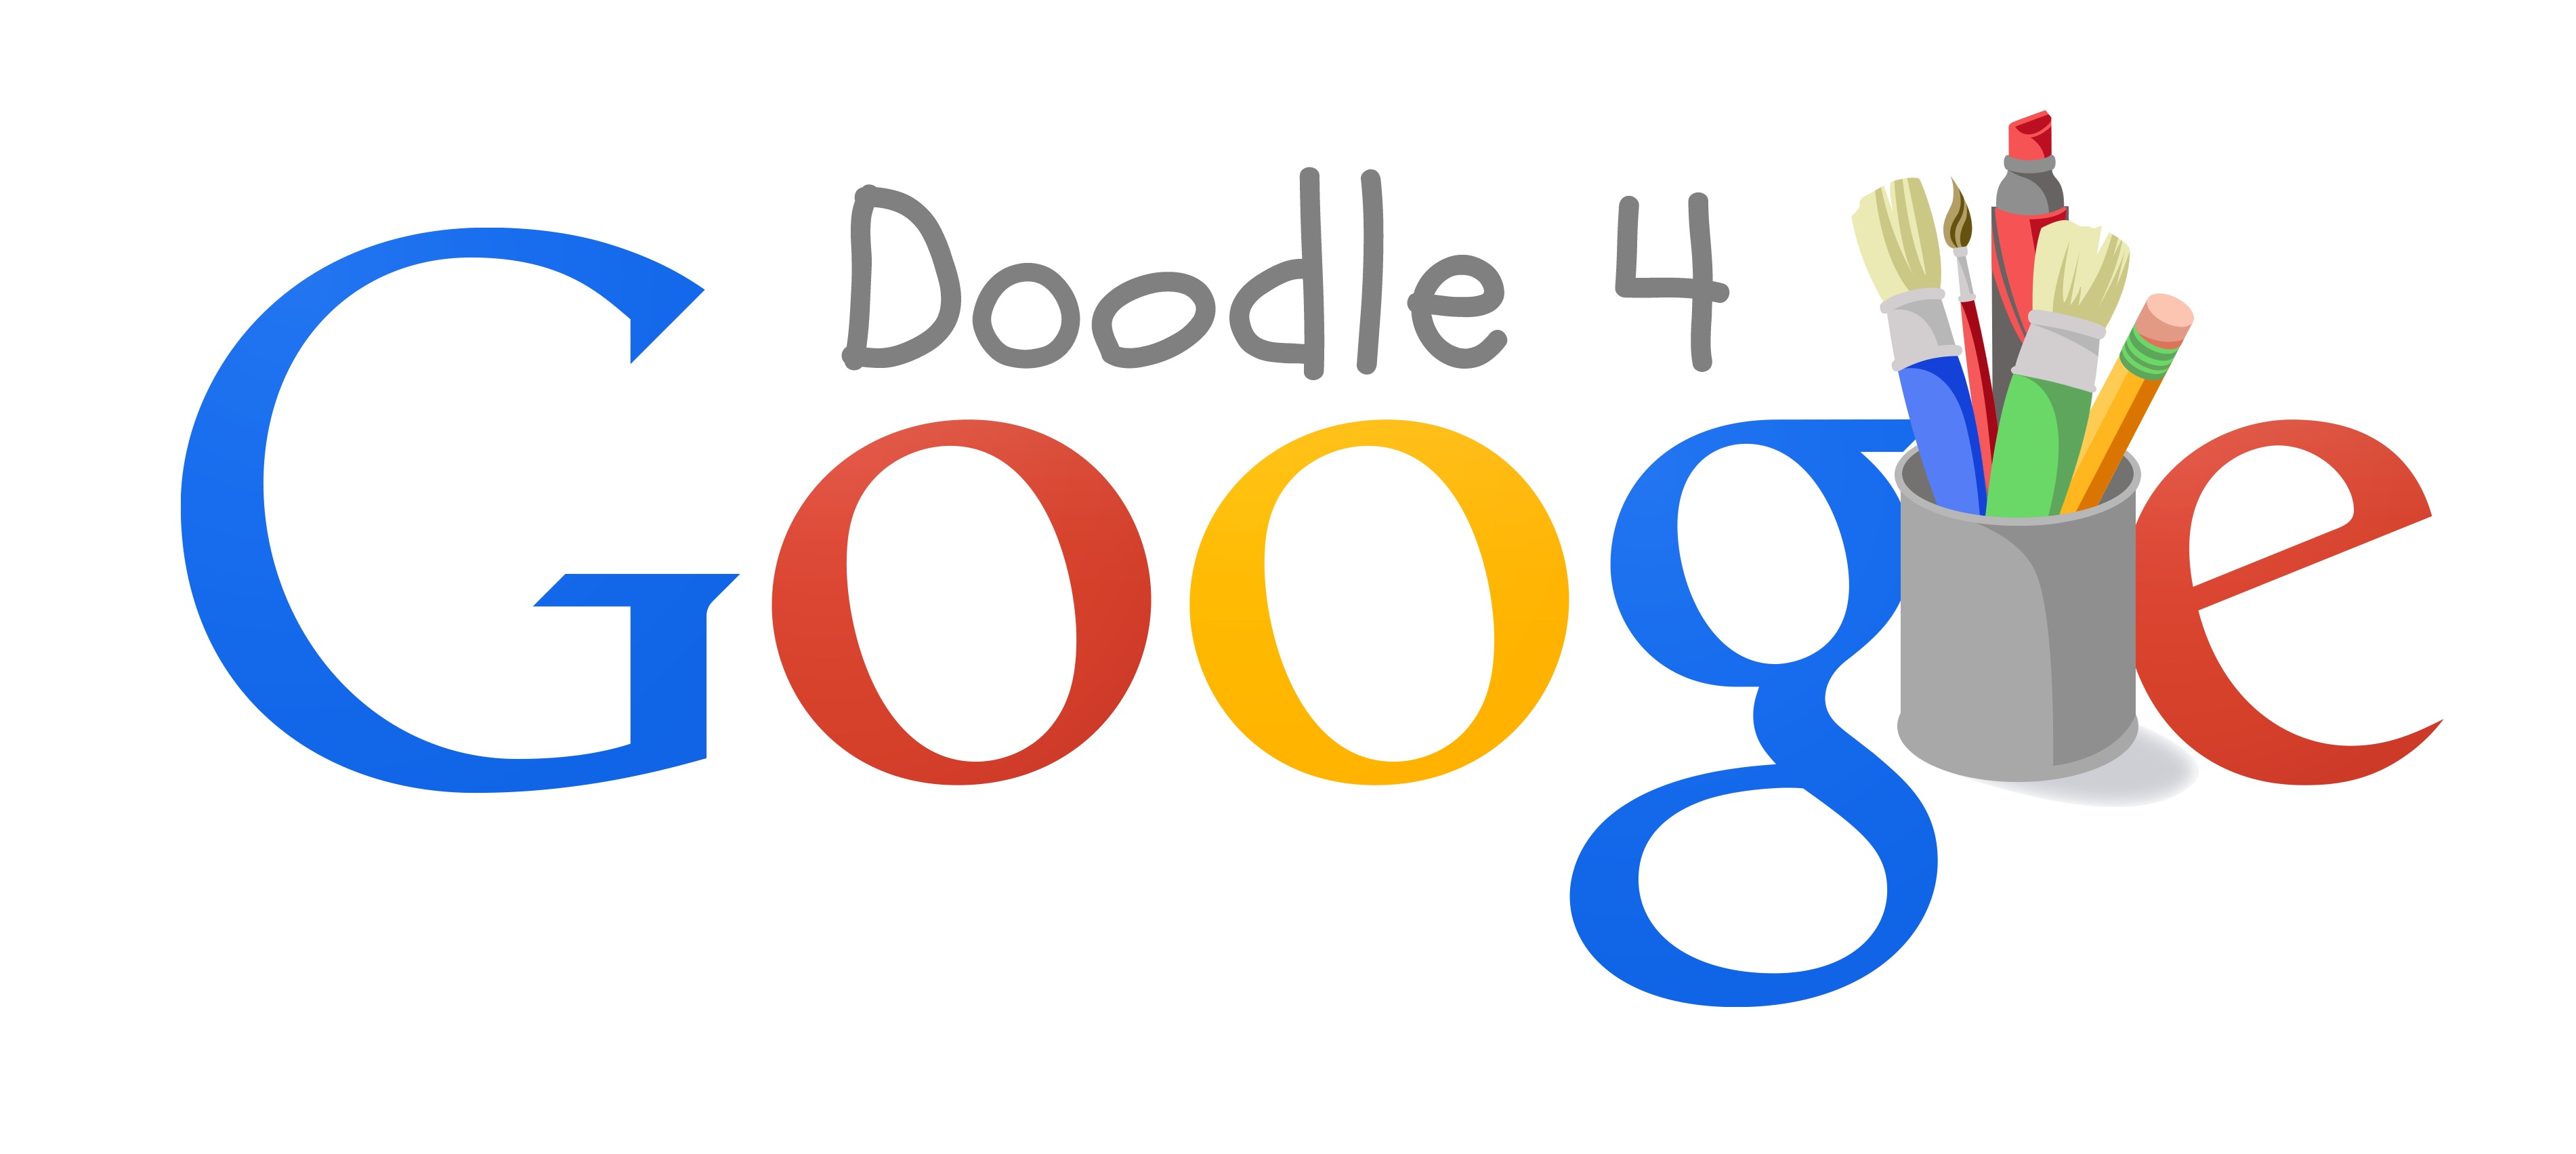 Google 4 класс. Гугл дудл. Логотип гугл. Дудл логотипы. Гугл картинки для детей.